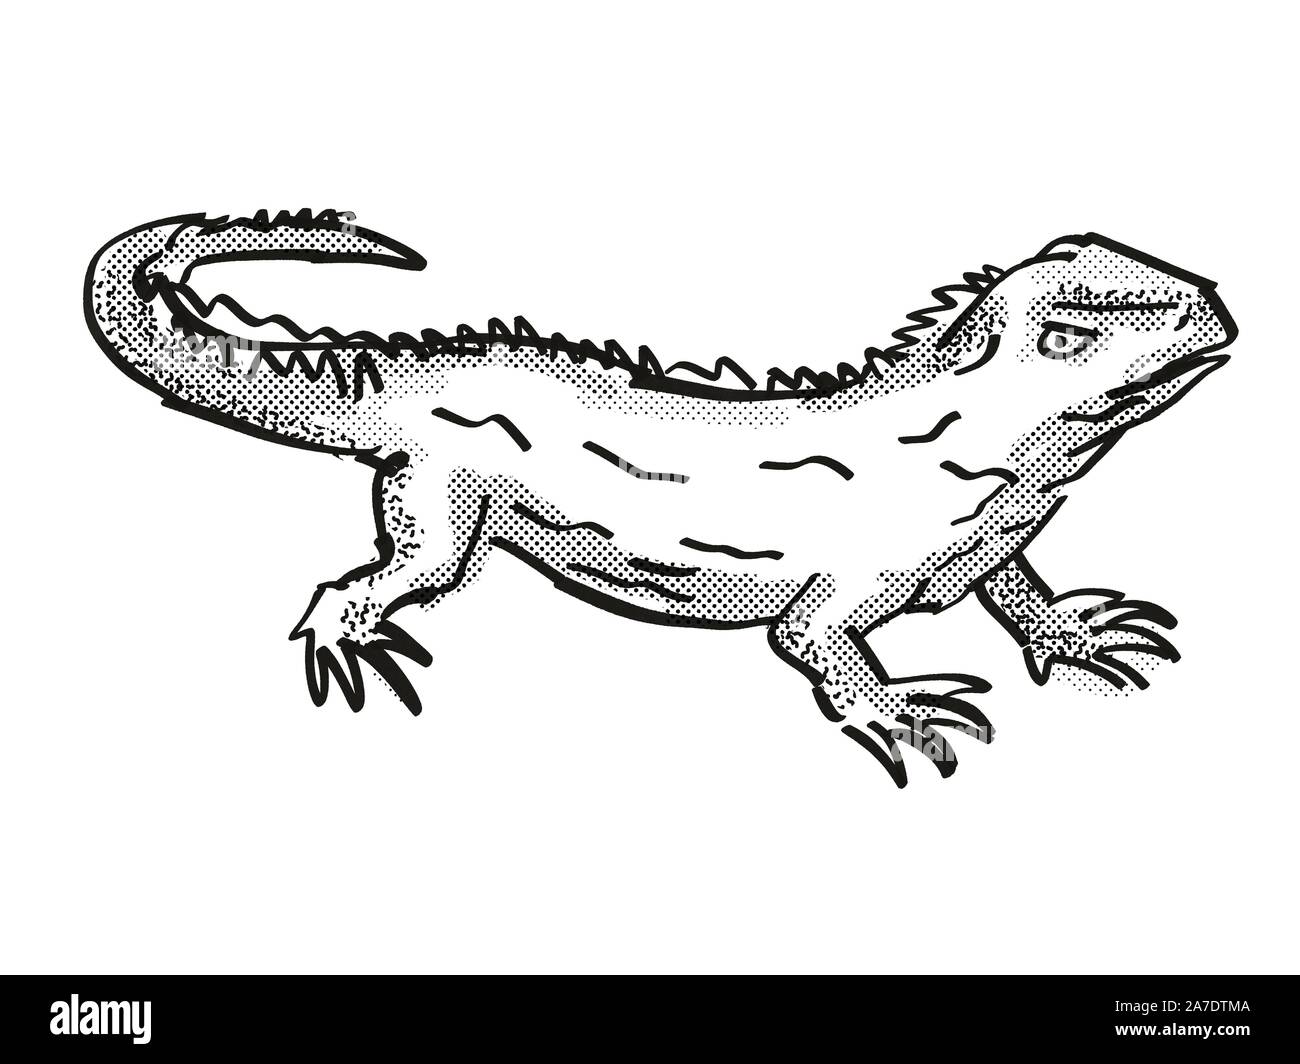 Retro cartoon style dessin d'un Tuatara , originaire de la faune de la Nouvelle-Zélande sur fond blanc isolé en noir et blanc Banque D'Images